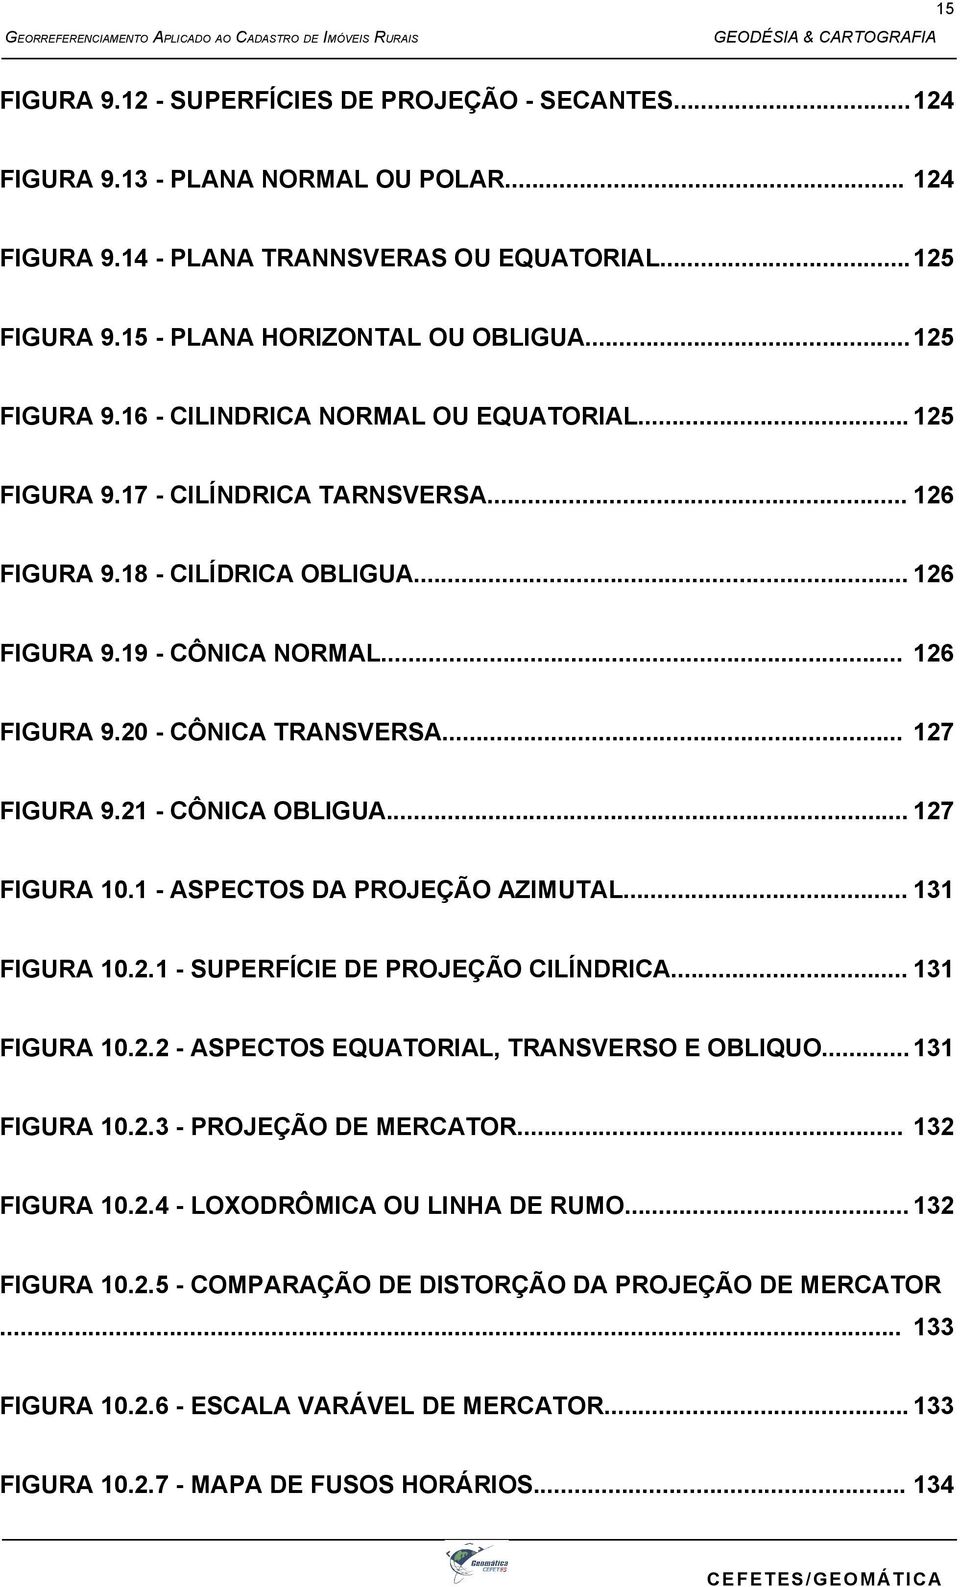 .. 127 FIGURA 9.21 - CÔNICA OBLIGUA... 127 FIGURA 10.1 - ASPECTOS DA PROJEÇÃO AZIMUTAL... 131 FIGURA 10.2.1 - SUPERFÍCIE DE PROJEÇÃO CILÍNDRICA... 131 FIGURA 10.2.2 - ASPECTOS EQUATORIAL, TRANSVERSO E OBLIQUO.